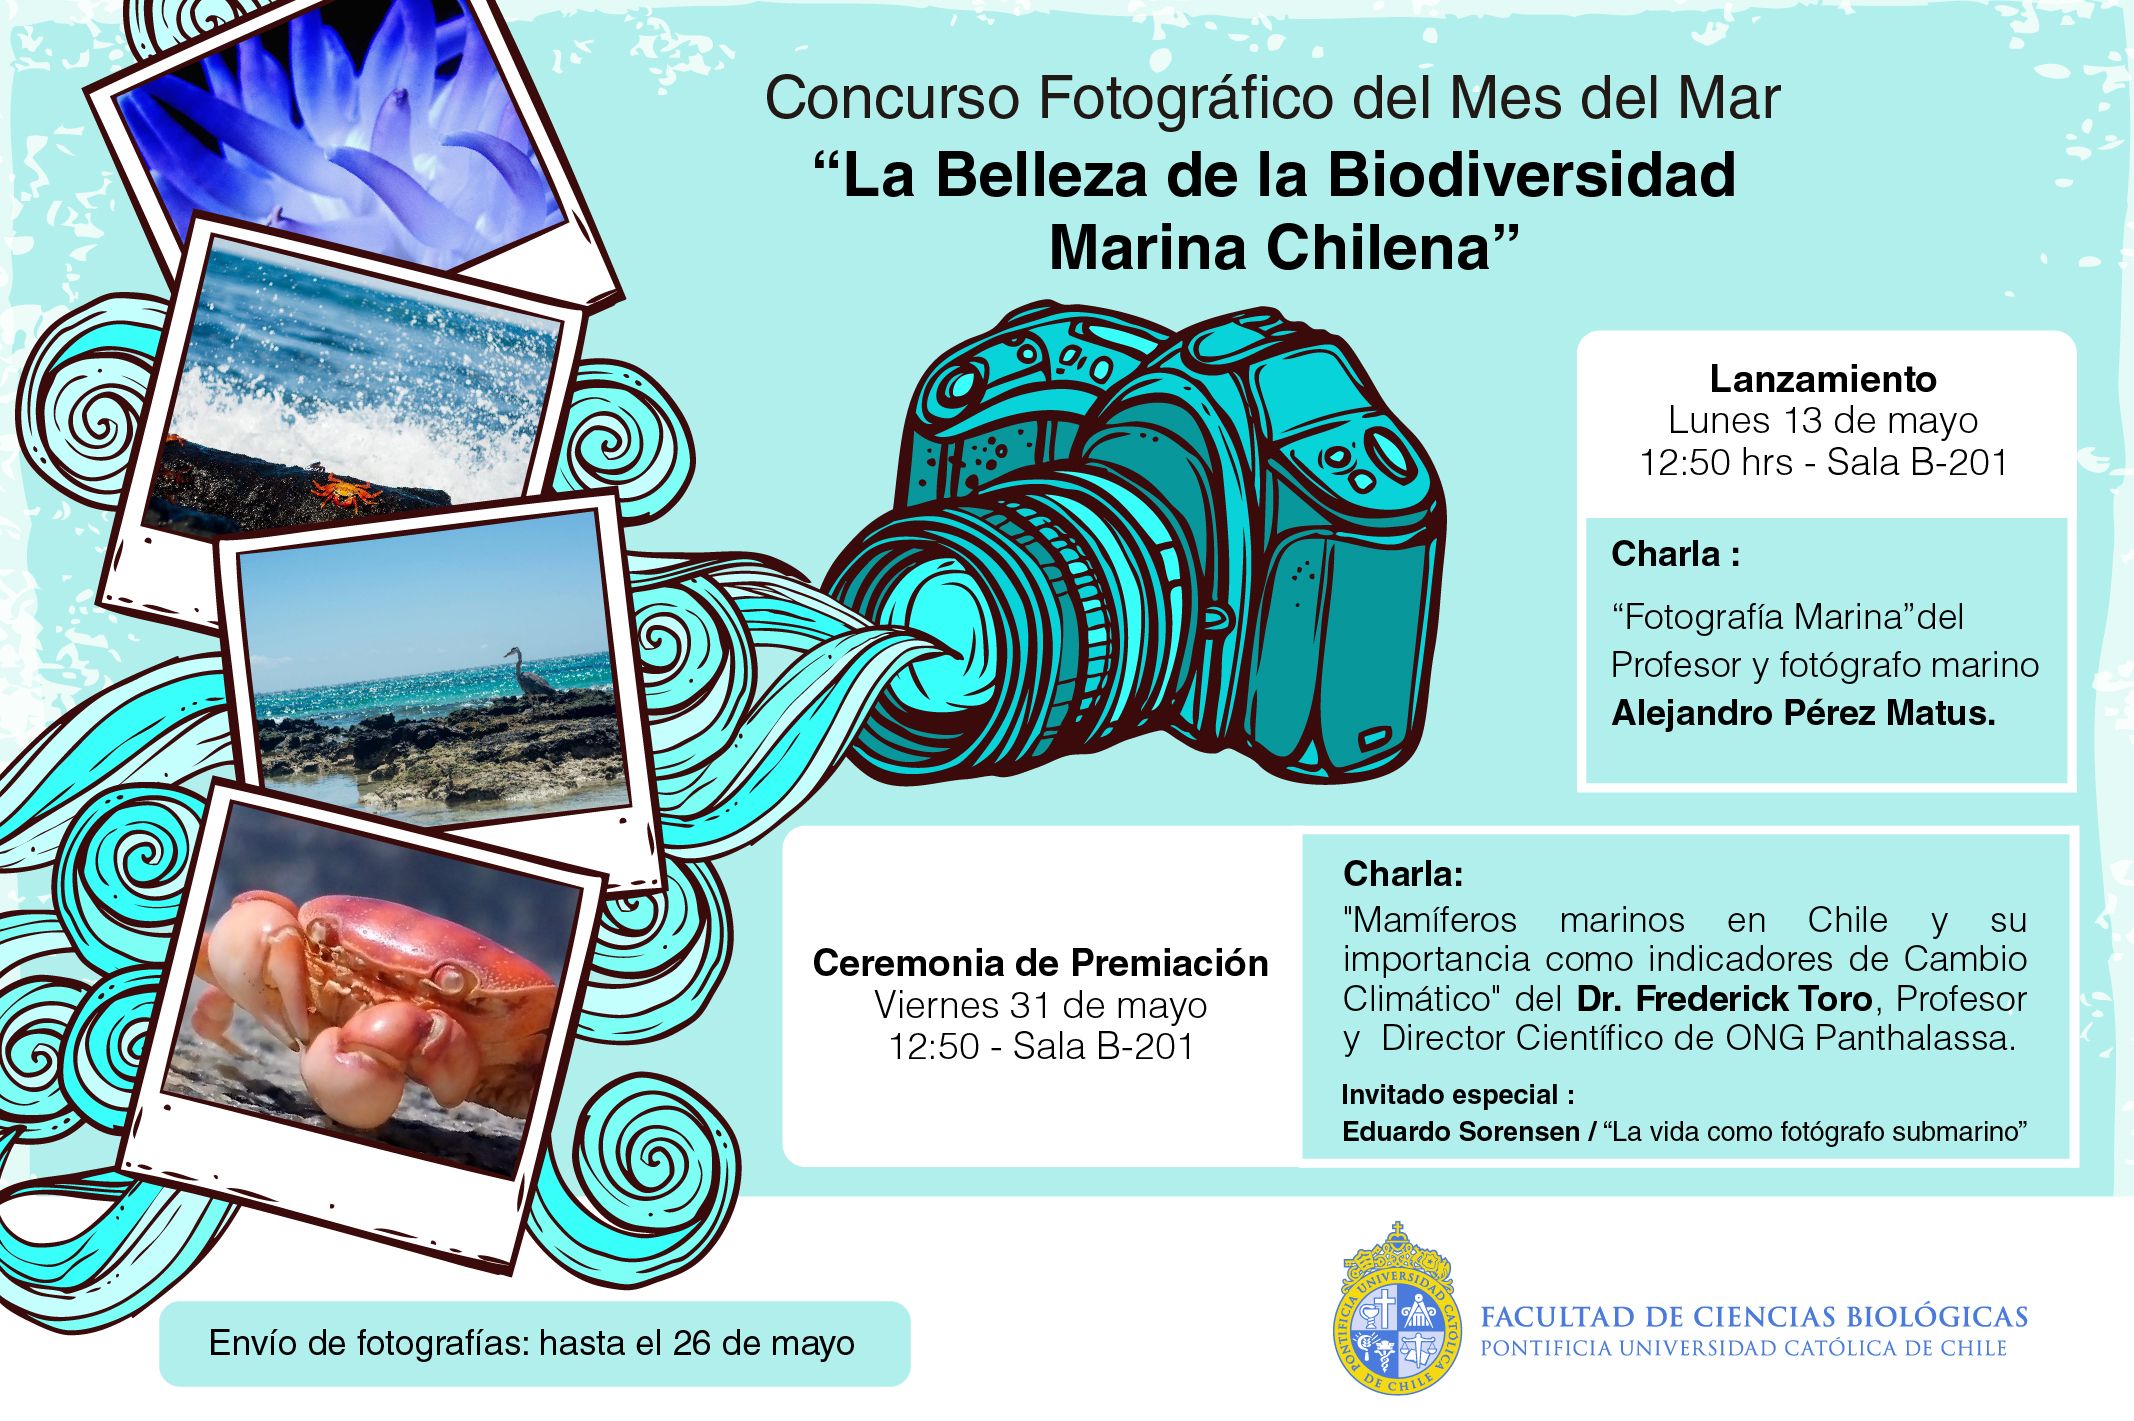 Concurso Fotográfico Mes del Mar “La Belleza de la Biodiversidad Marina Chilena”